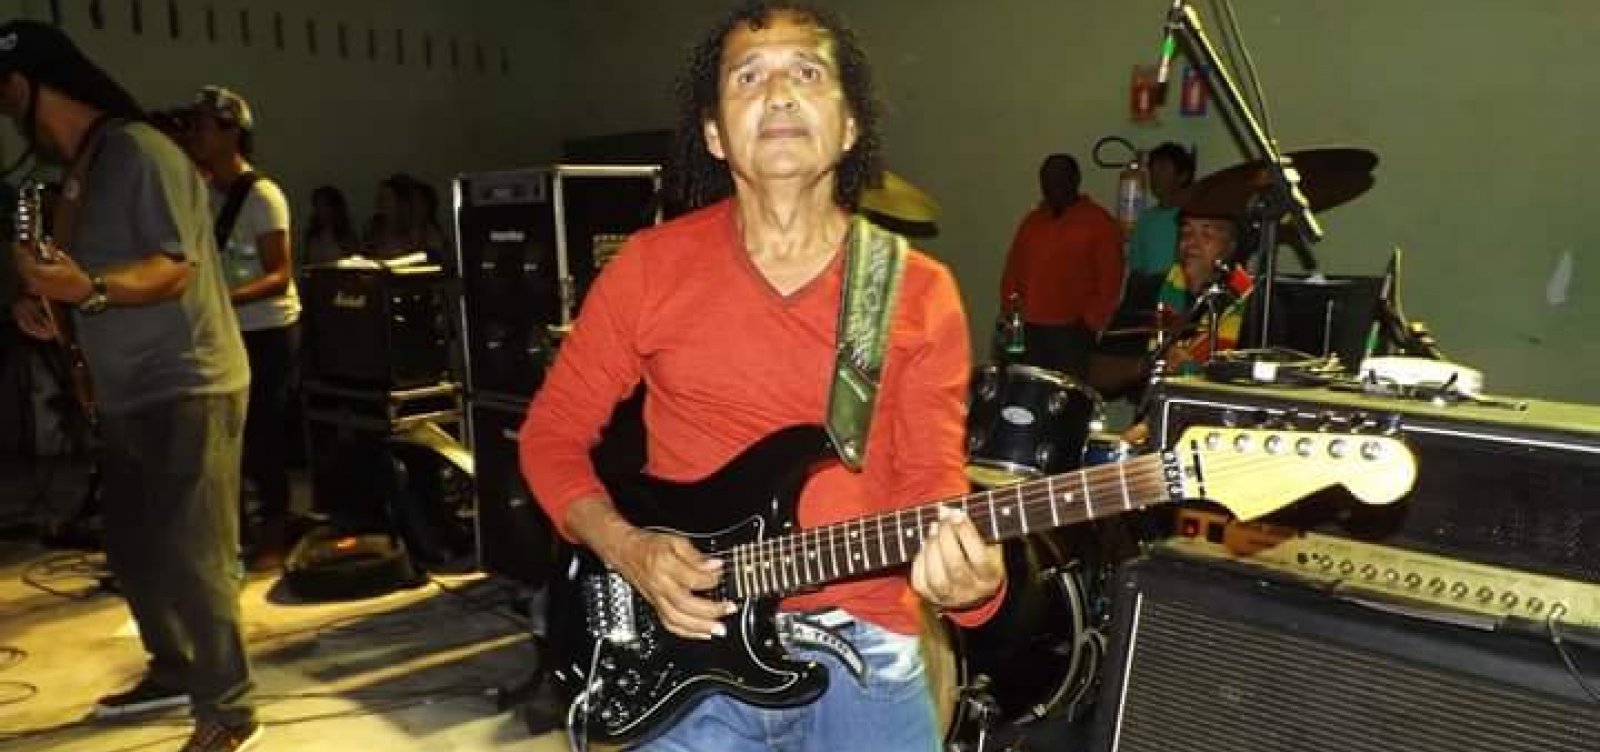 Morre no Trauma de João Pessoa o guitarrista Antônio Ramos de Oliveira (Tony) do grupo de Edson Gomes